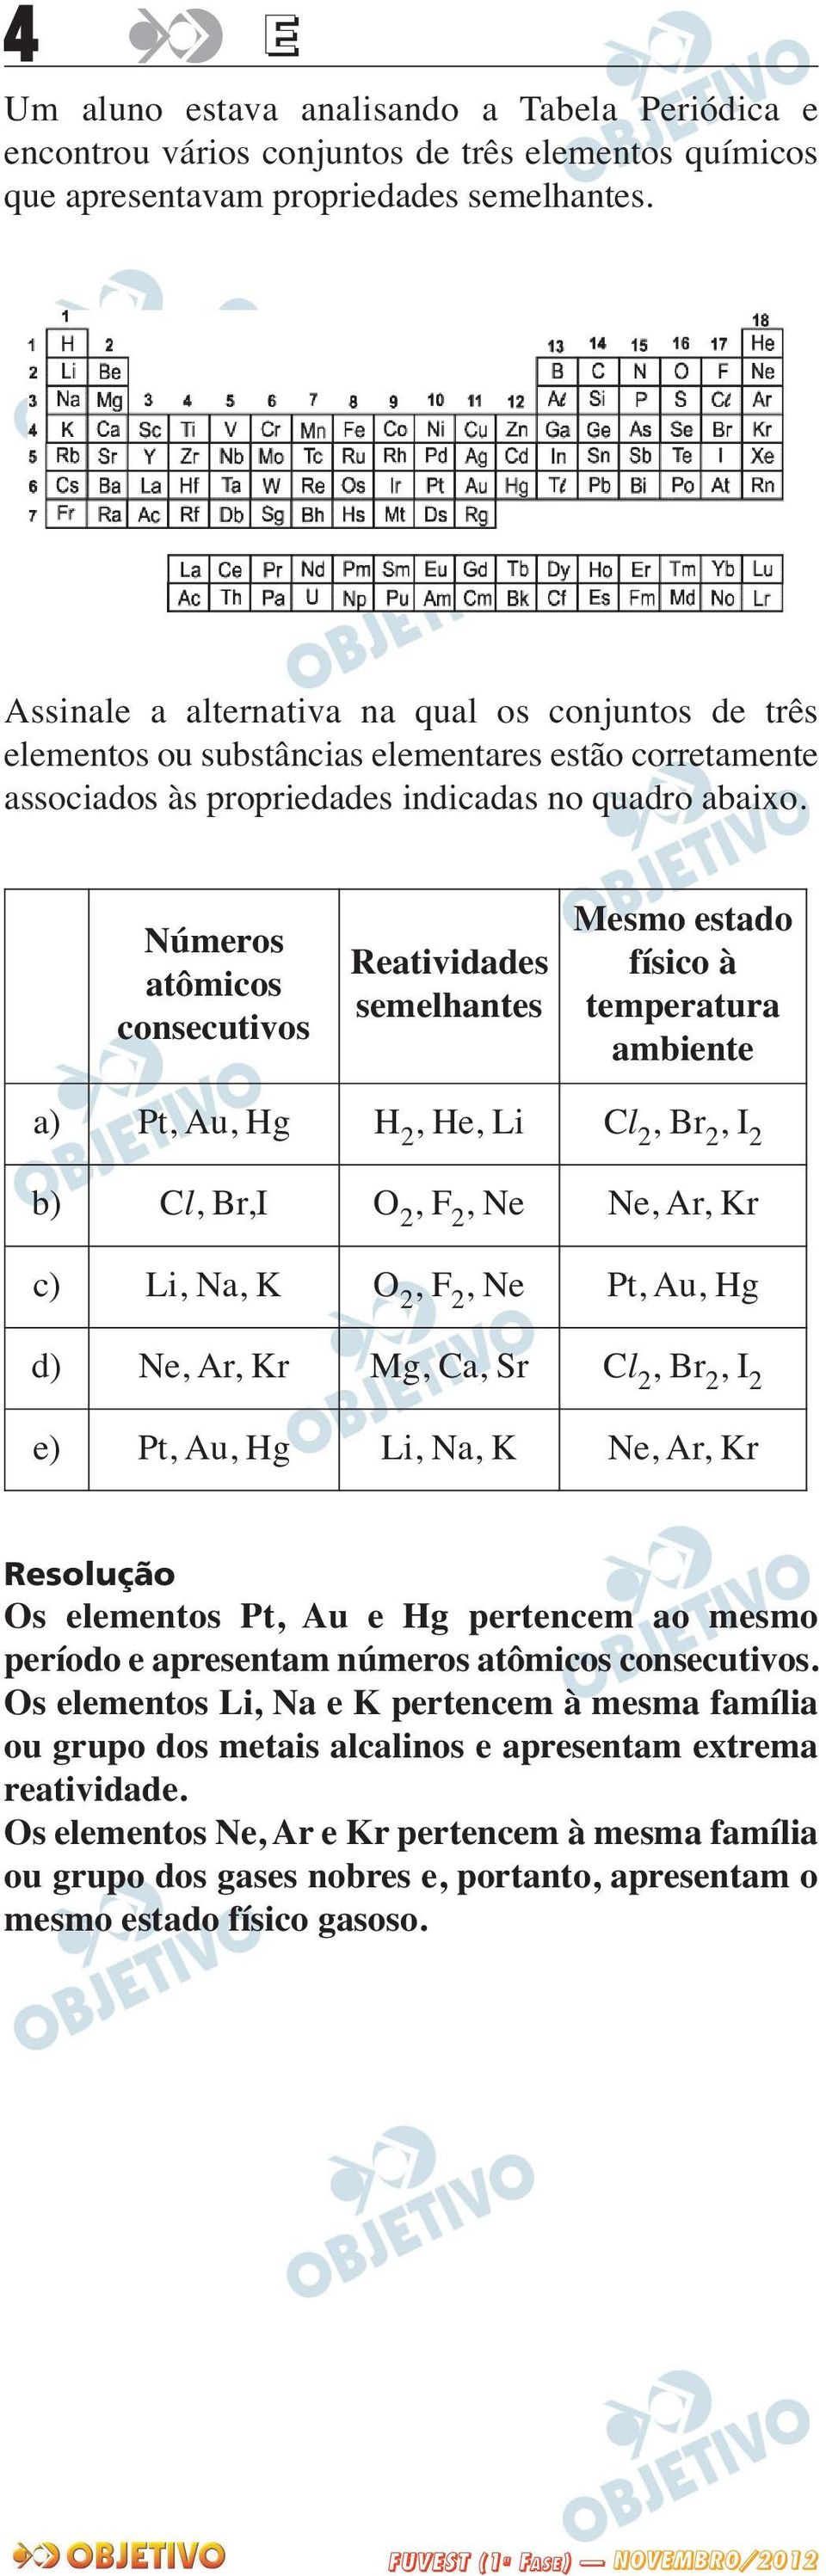 Números atômicos consecutivos Reatividades semelhantes Mesmo estado físico à temperatura ambiente a) Pt, Au, Hg H 2, He, Li Cl 2, Br 2, I 2 b) Cl, Br,I O 2, F 2, Ne Ne, Ar, Kr c) Li, Na, K O 2, F 2,